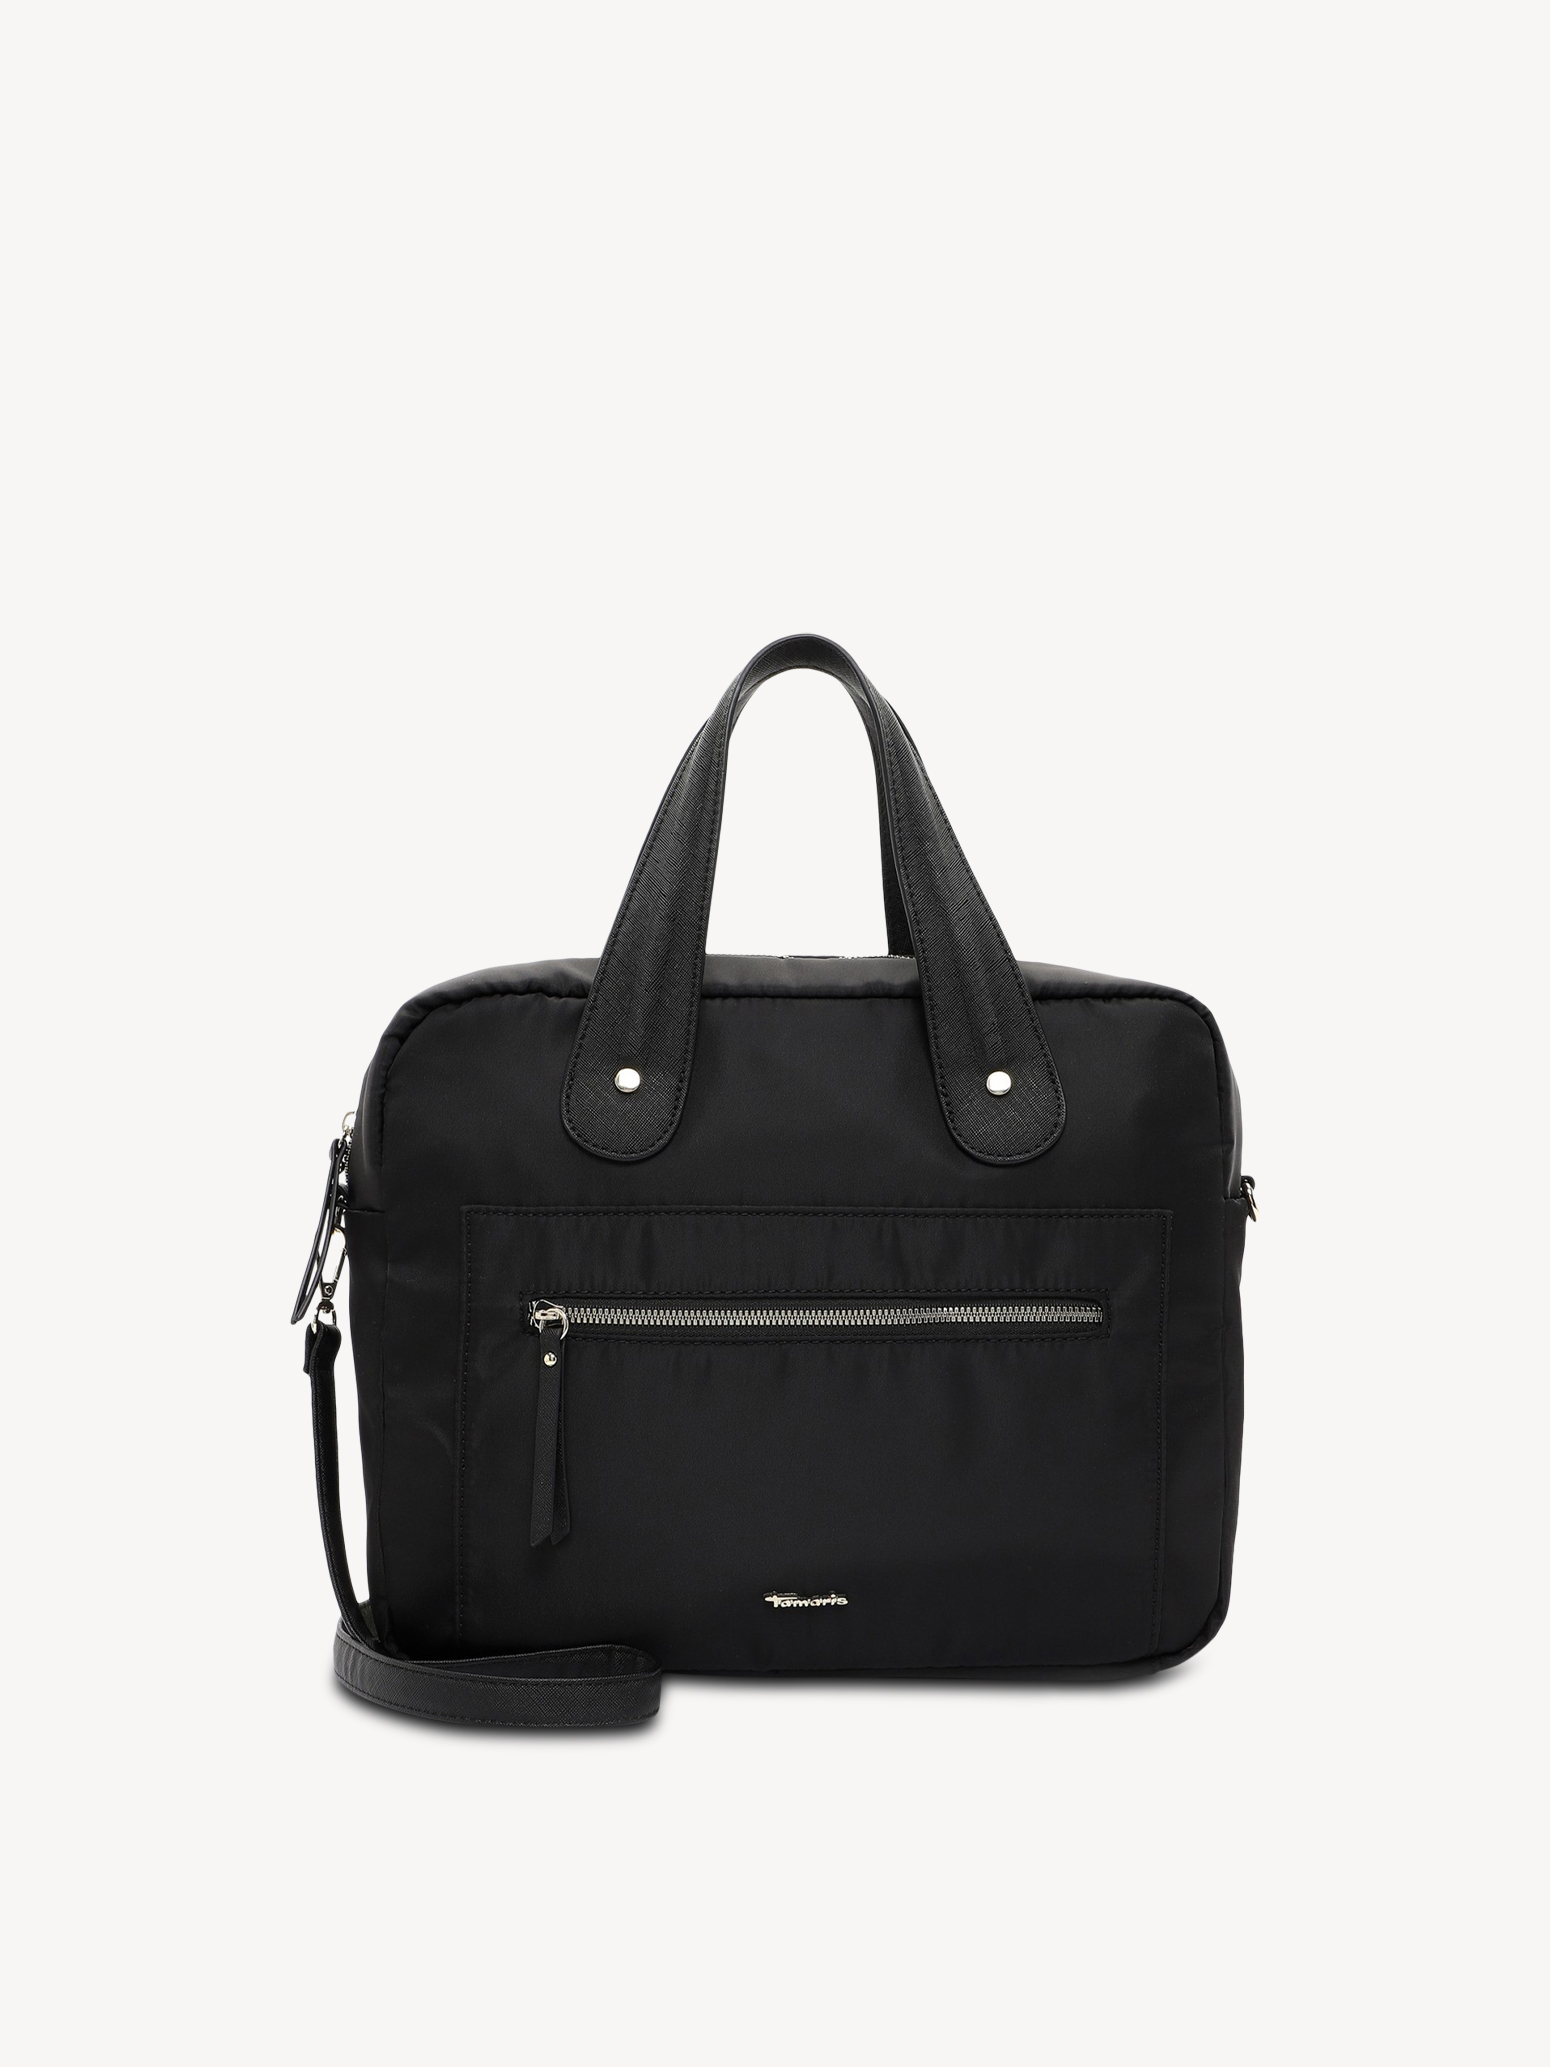 Business bag - black, black, hi-res